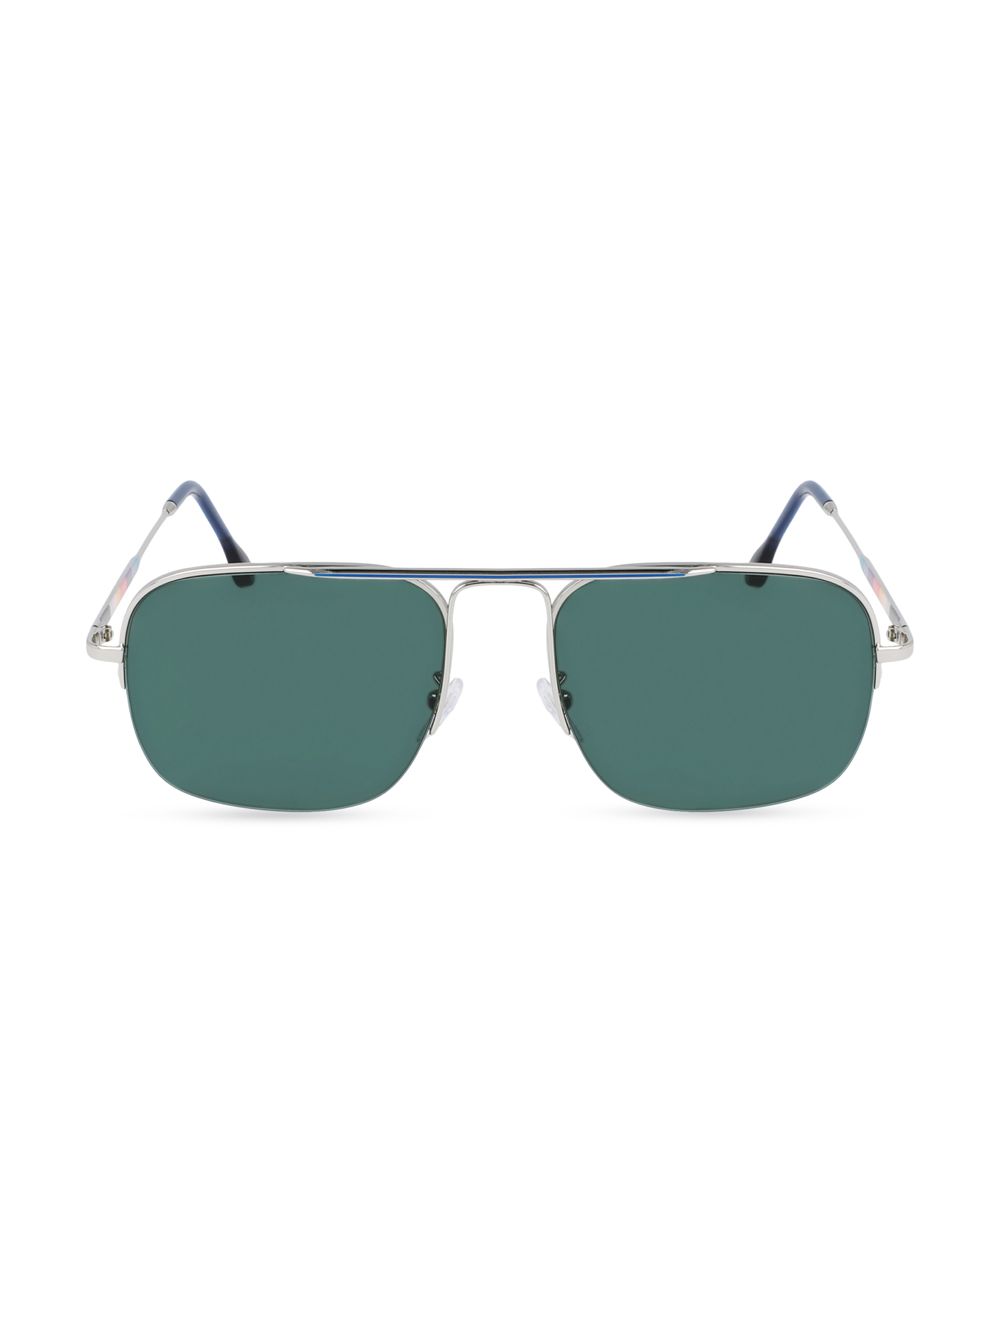 Прямоугольные солнцезащитные очки Clifton 58 мм Paul Smith, серебряный